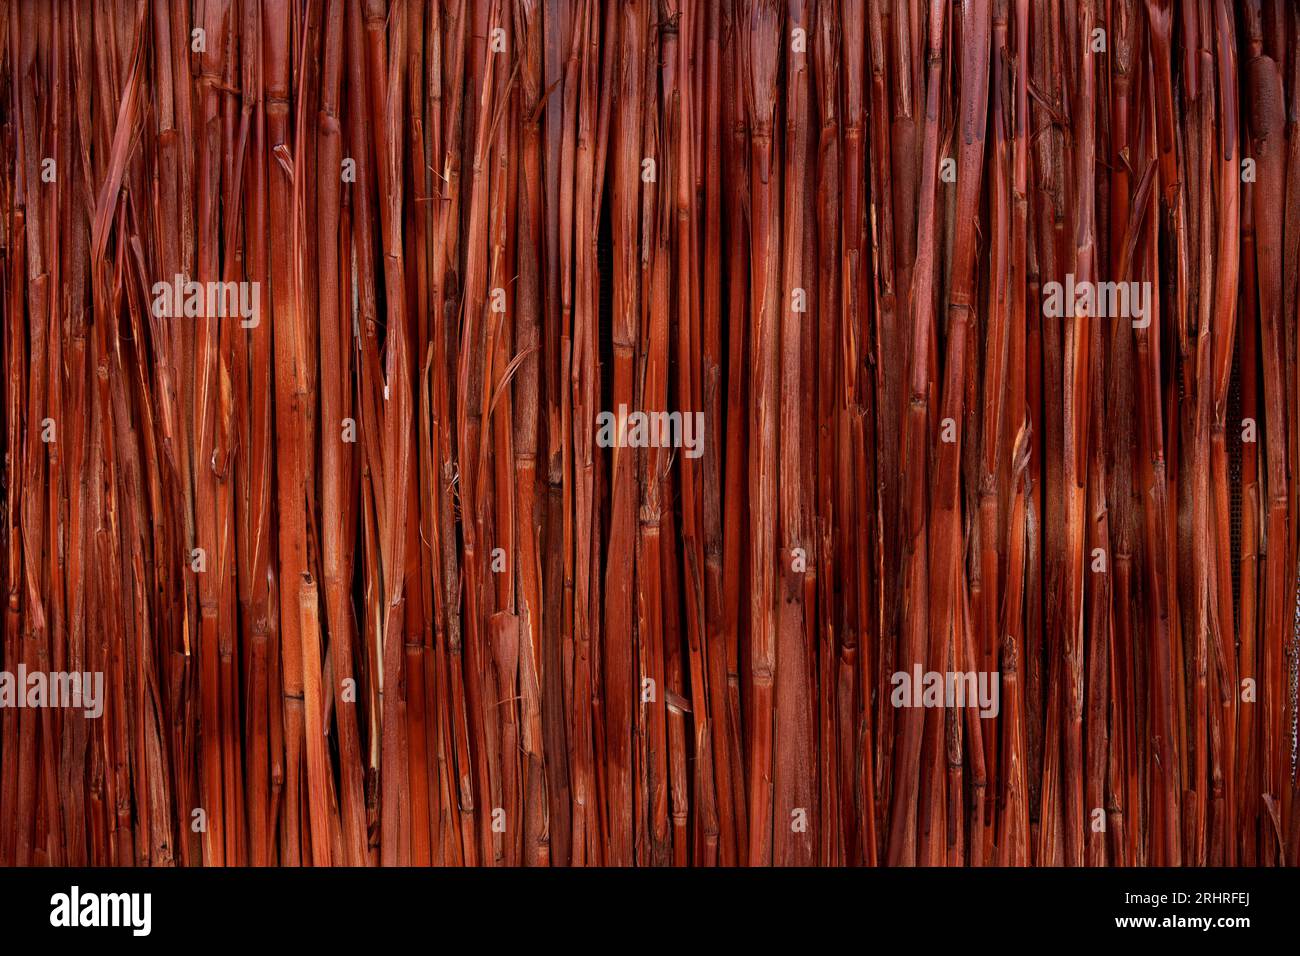 Abstrakter Schilf- oder Bambushintergrund Stockfoto